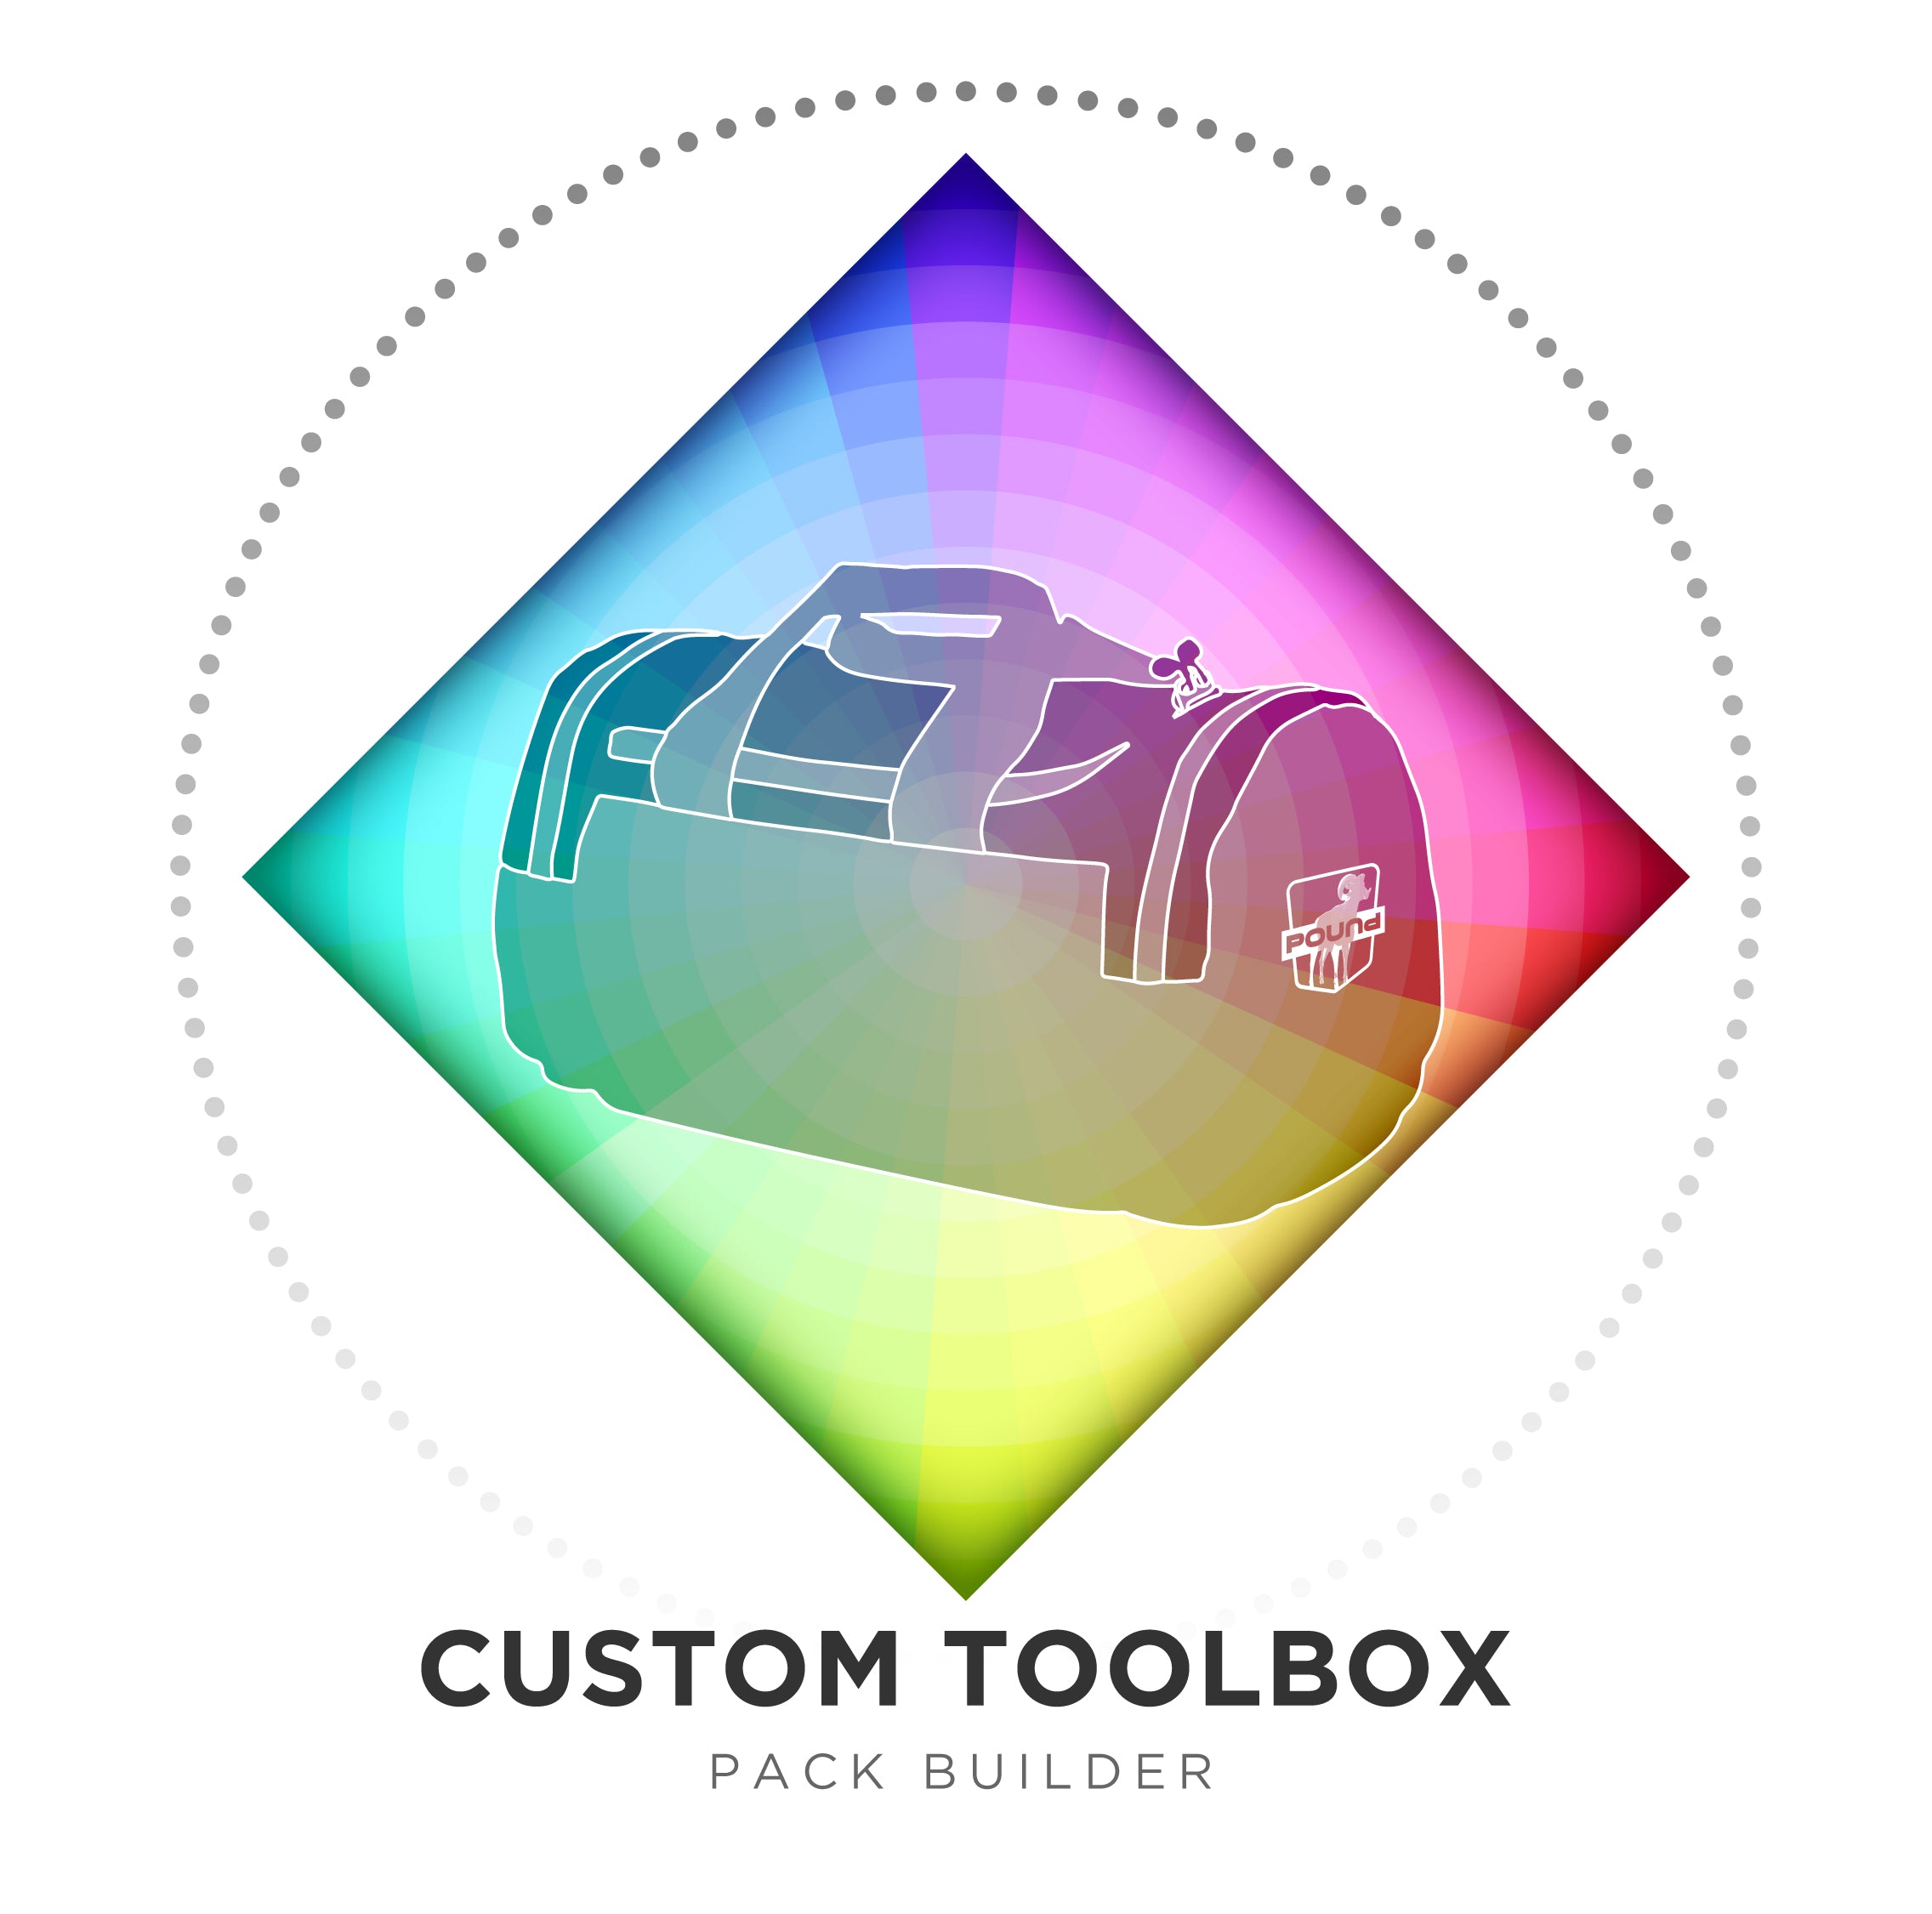 Custom Toolbox: Pack Builder